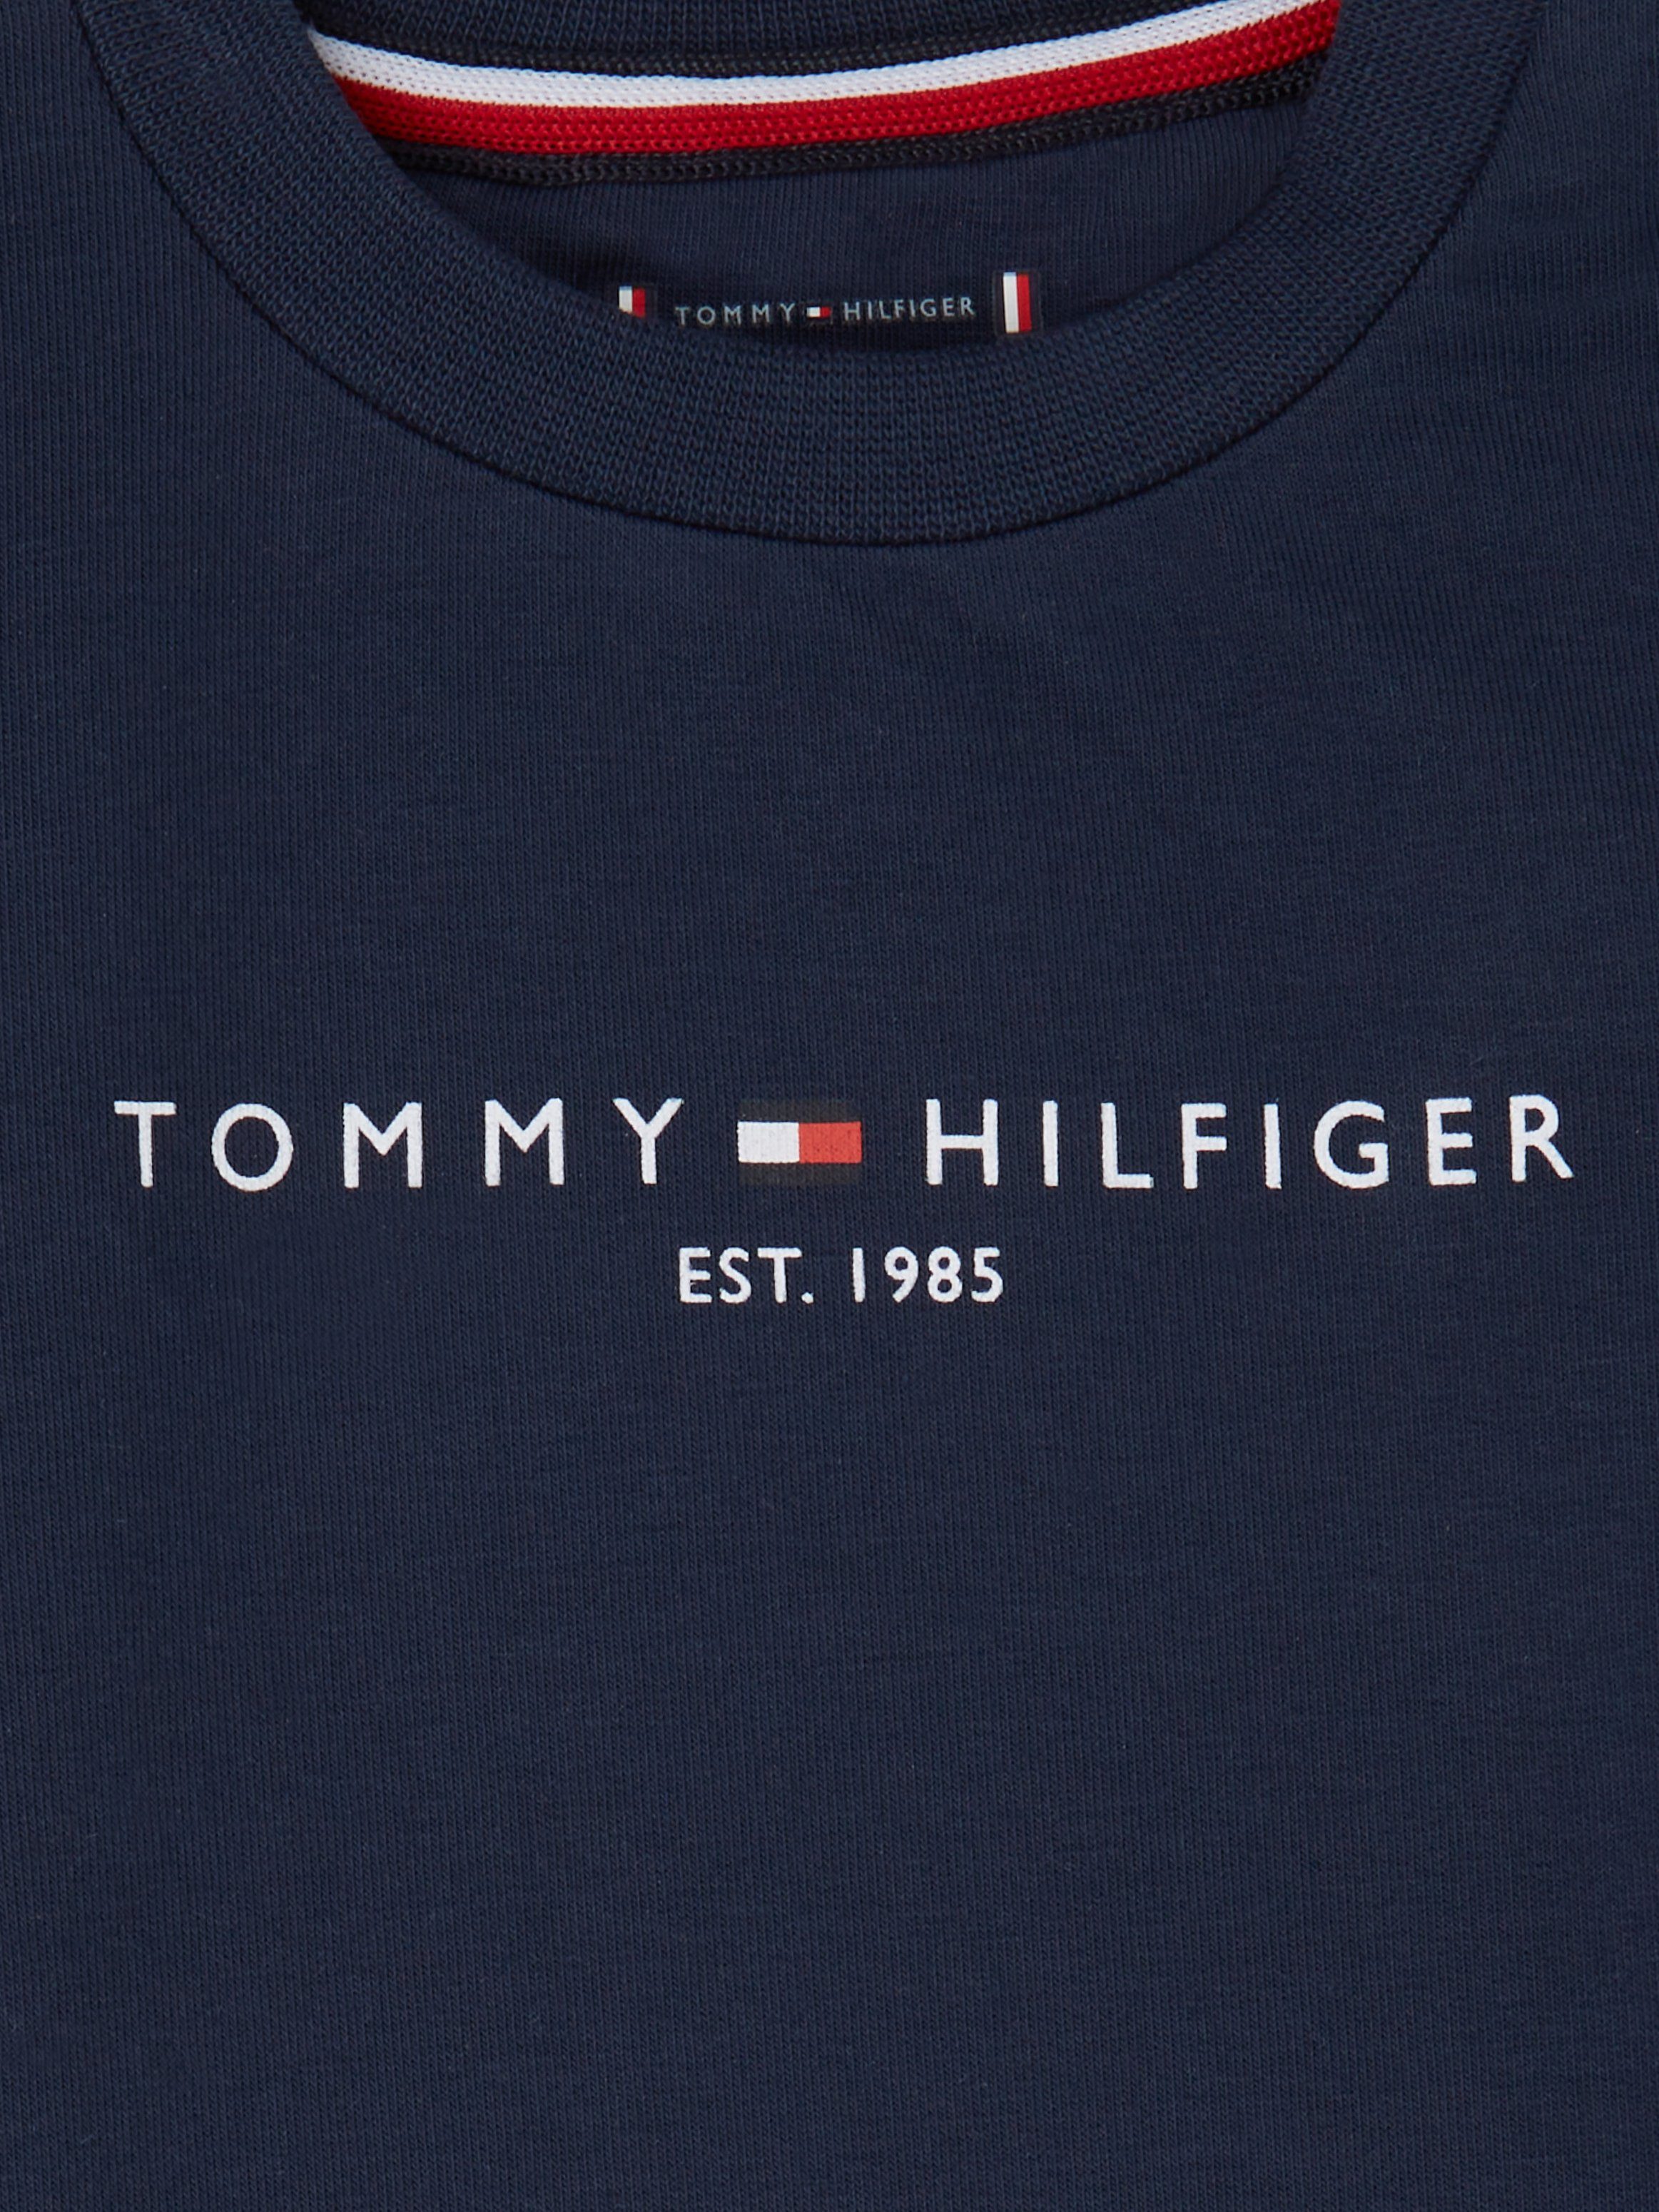 Tommy Hilfiger Shirt & Hose CREWSUIT 2-tlg., (Set, 2er) ESSENTIAL BABY